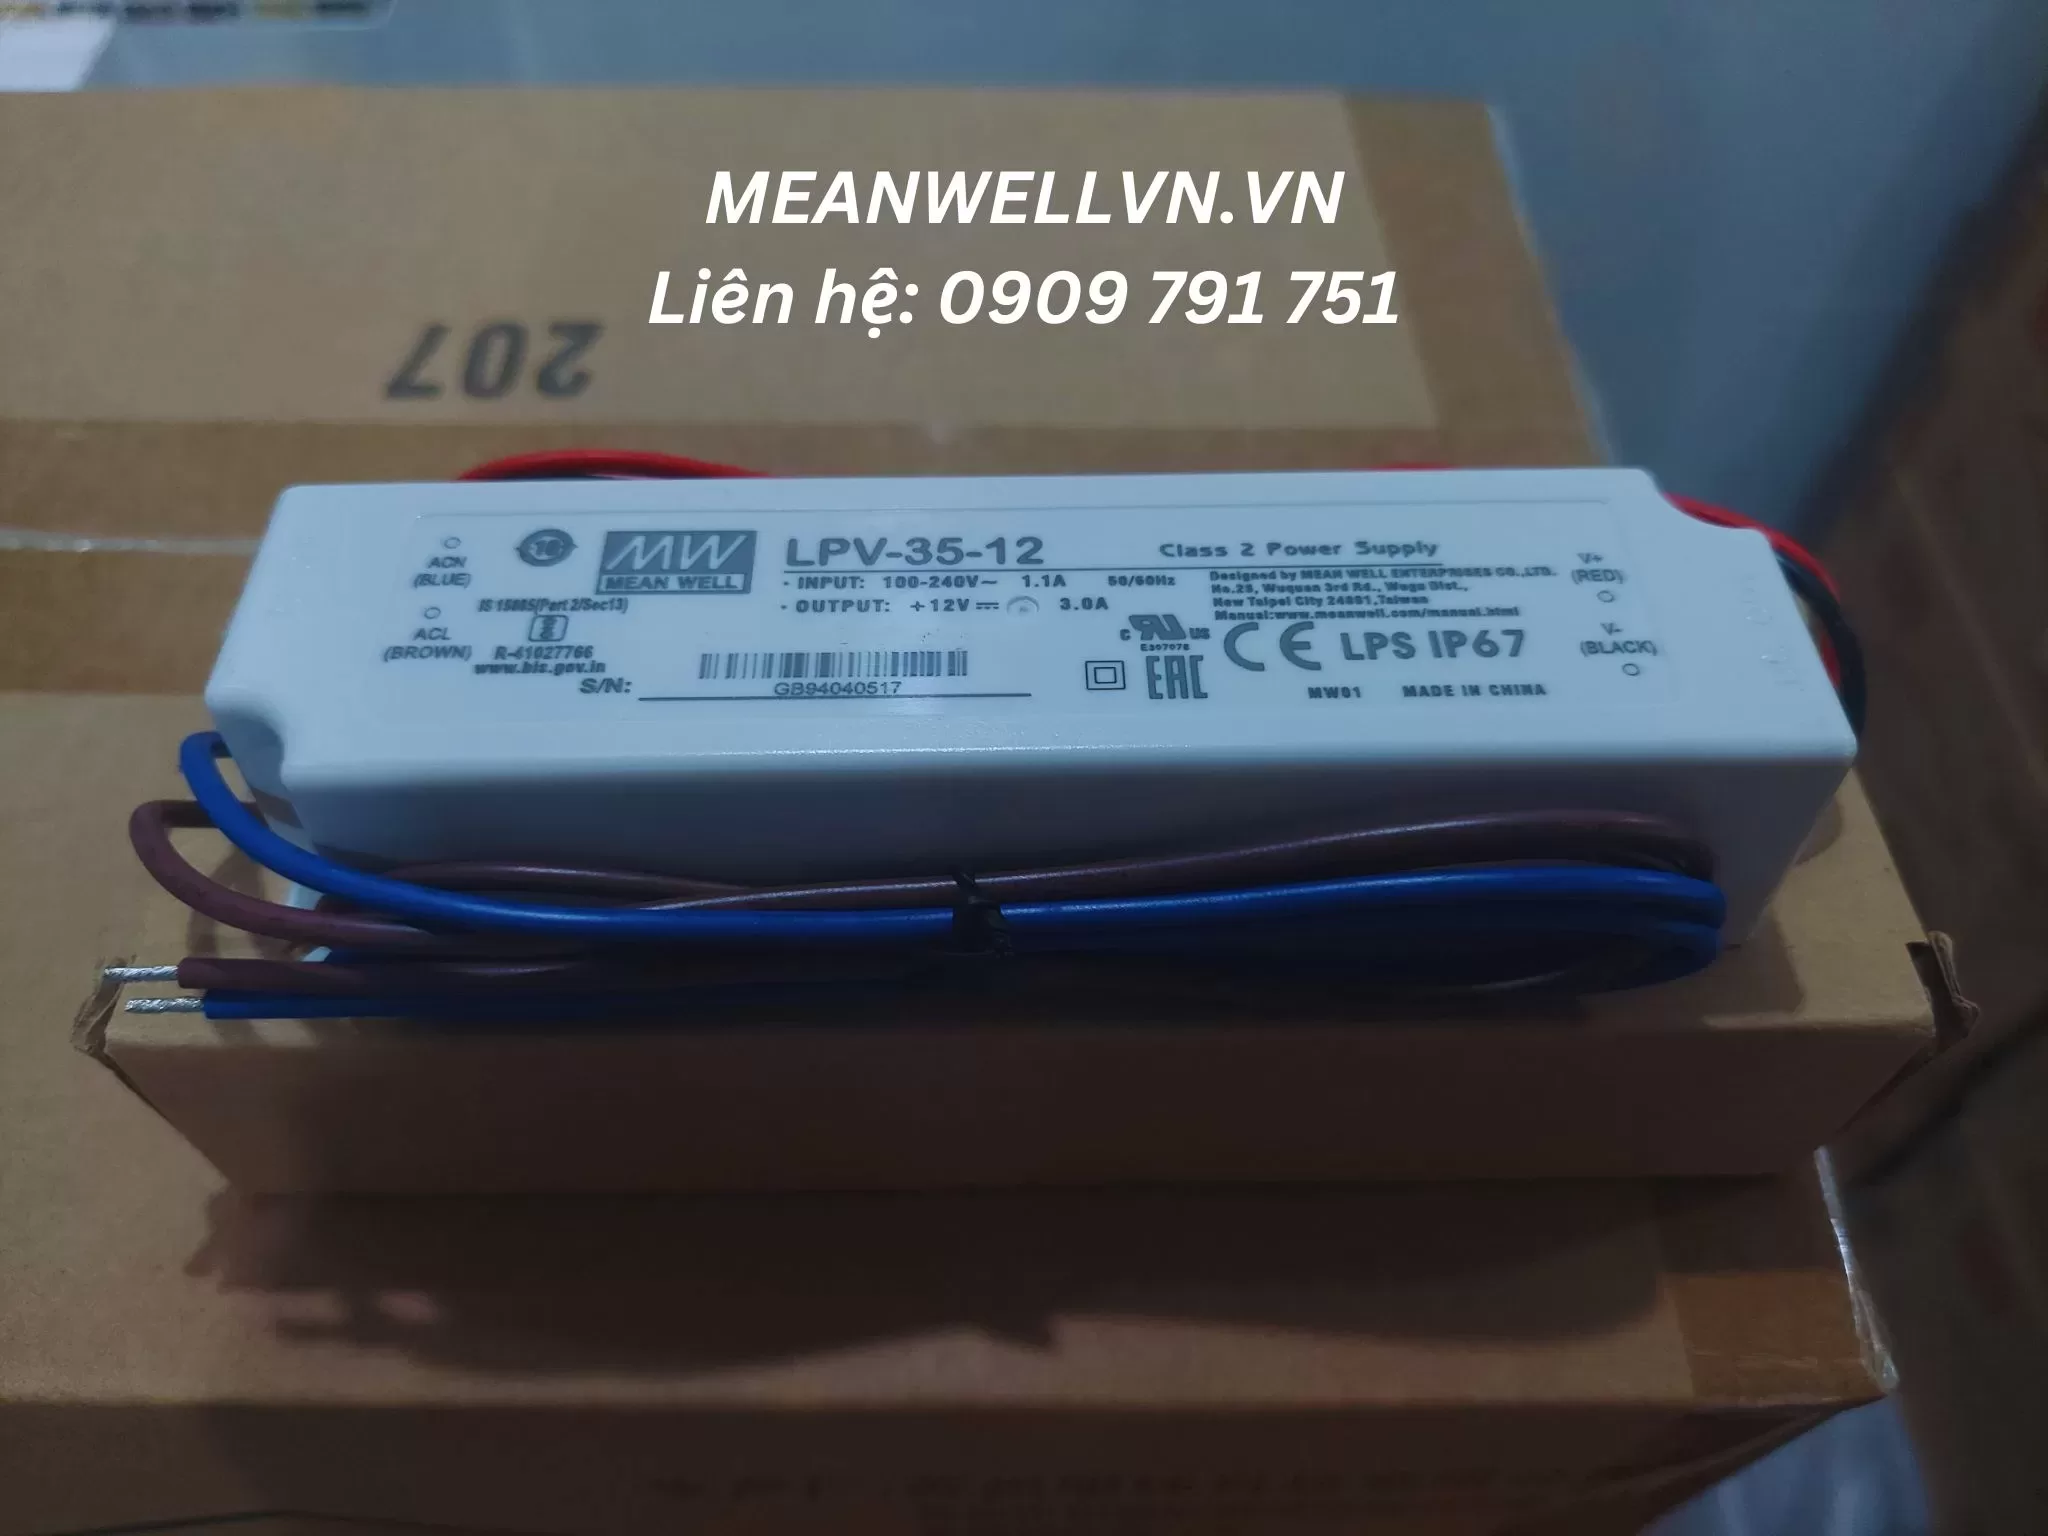 Nguồn Meanwell LPV-35-12